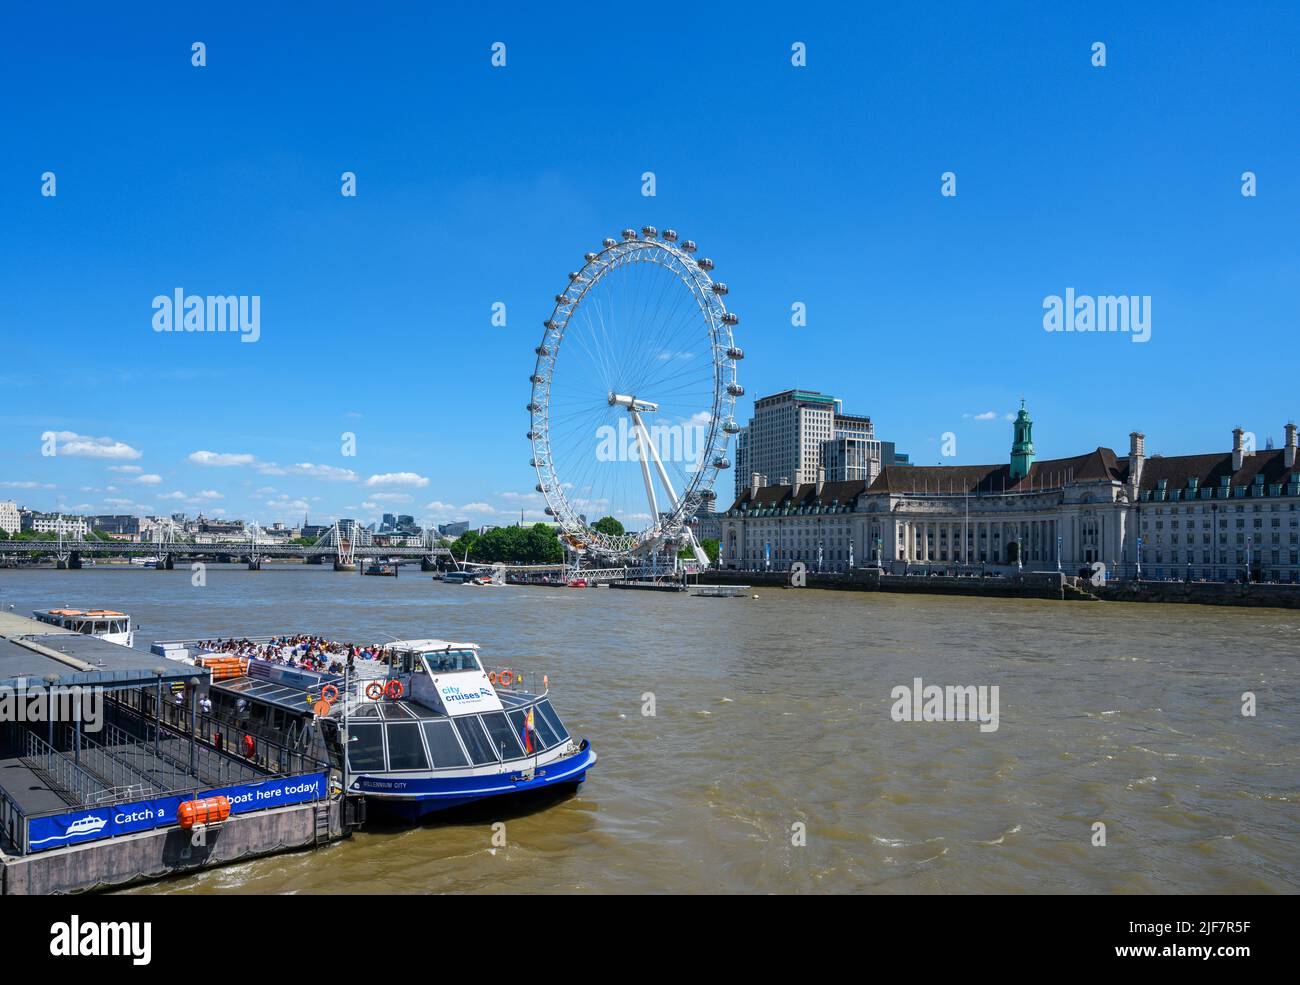 Croisière London Eye and City Cruises en bateau à Westminster Pier, River Thames, Londres, Angleterre, Royaume-Uni Banque D'Images